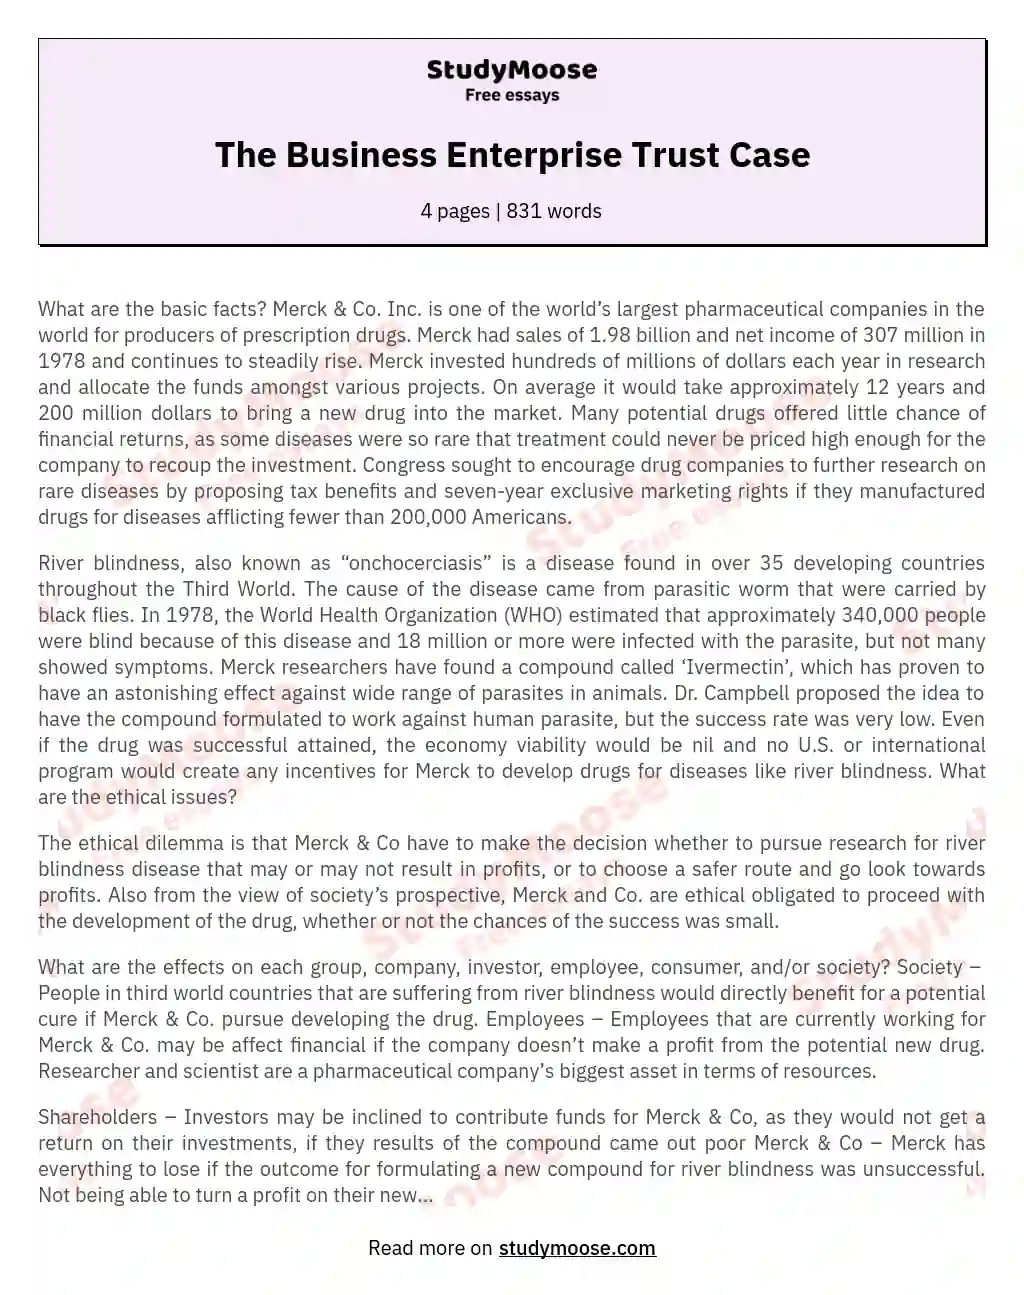 The Business Enterprise Trust Case